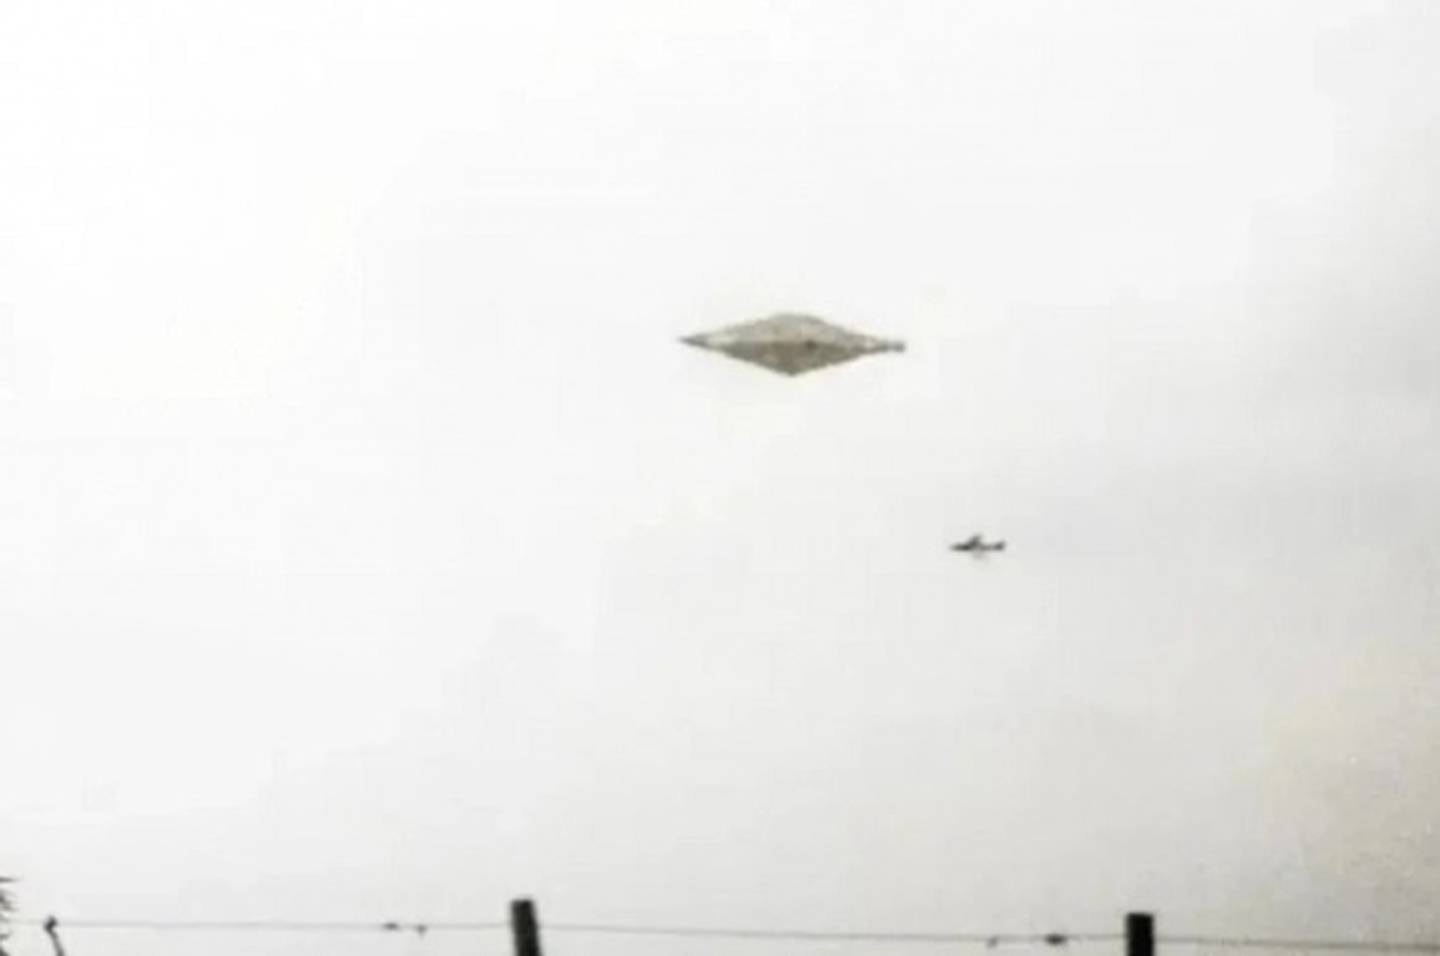 El 4 de agosto de 1990, dos jóvenes fotografiaron en la zona de Calvine, en Inglatera, a un objeto volador extraño de 30 metros de largo